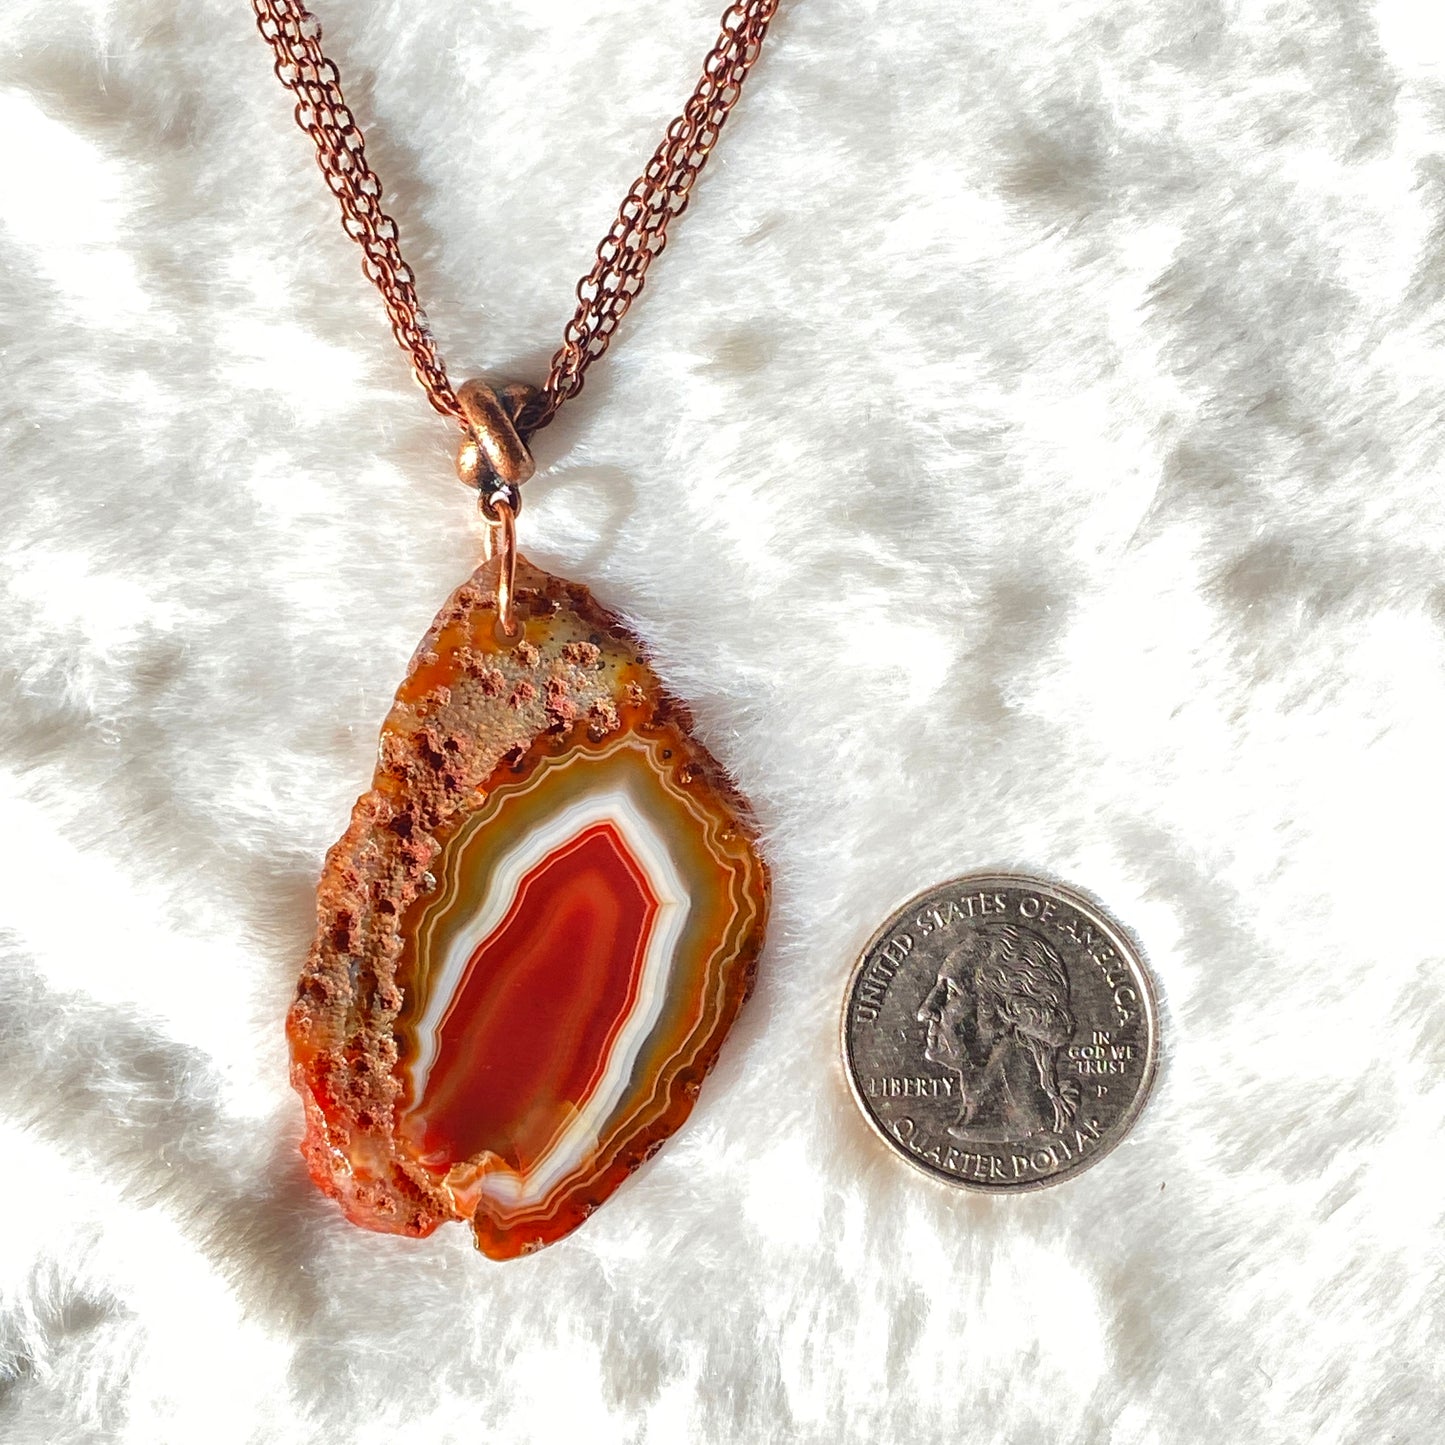 Red Agate Slice pendant copper chain necklace